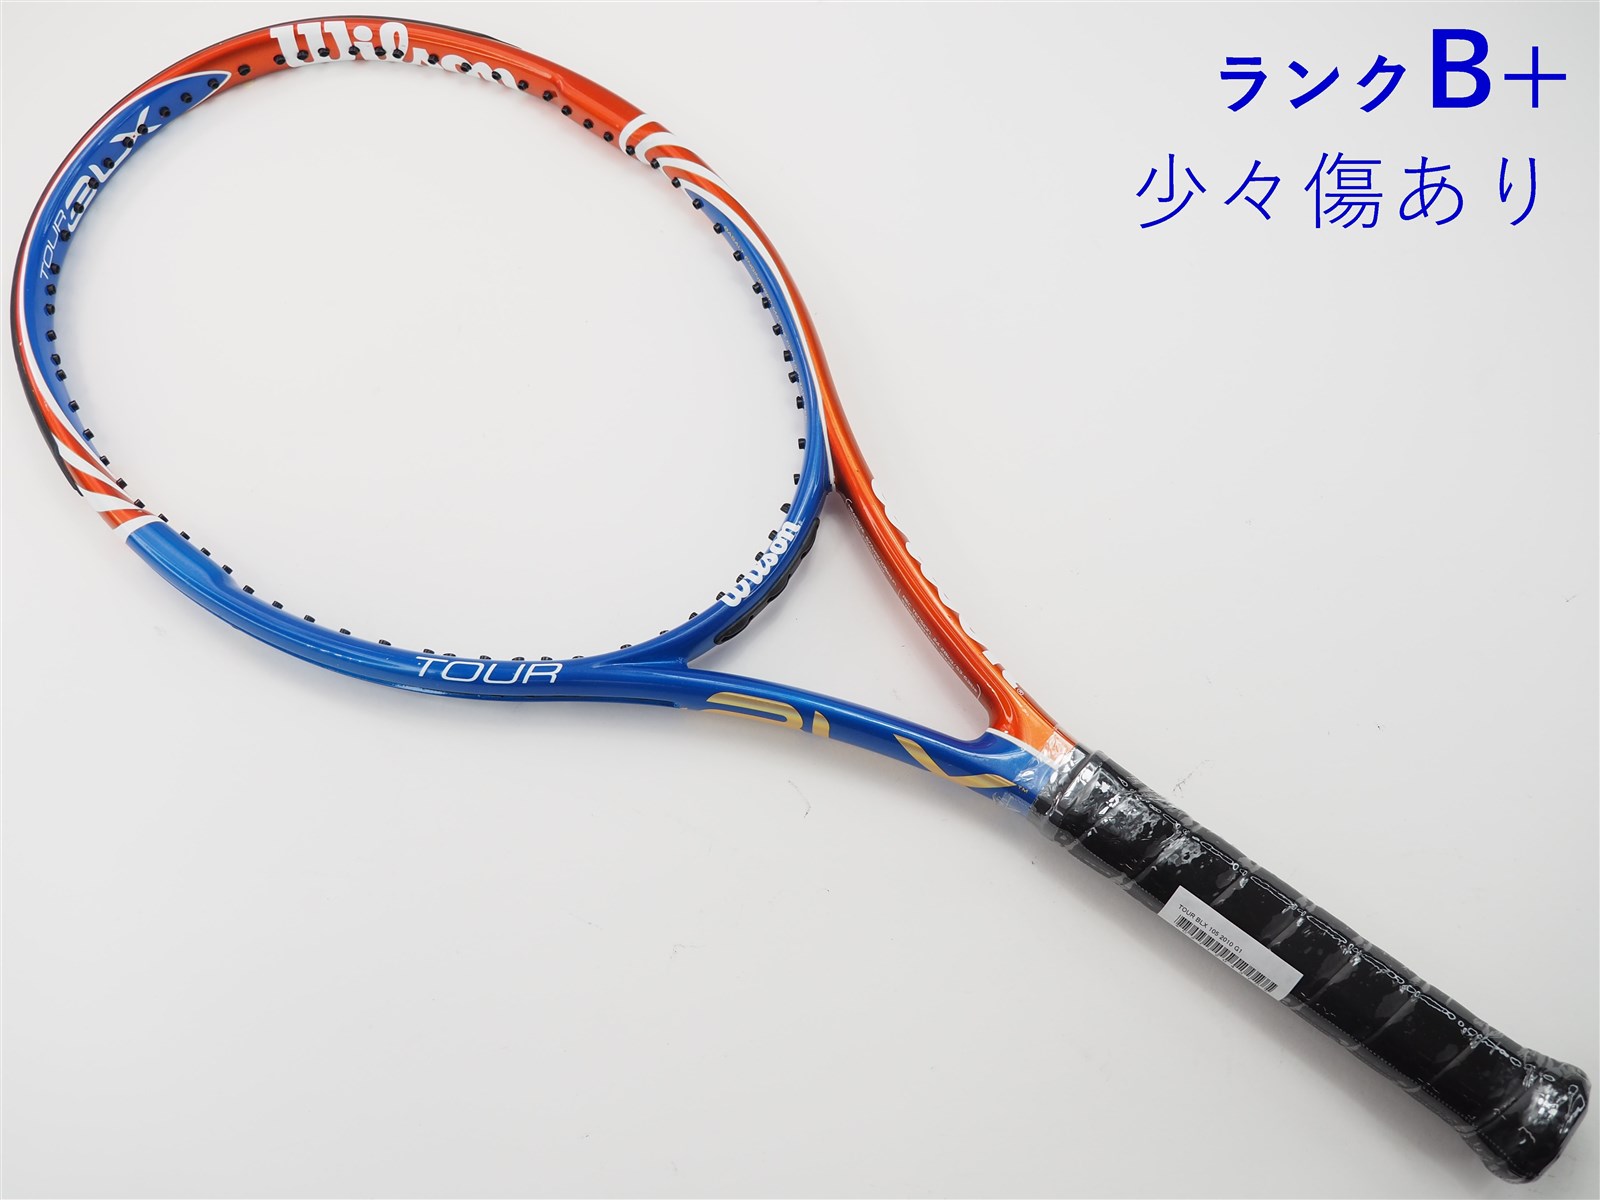 テニスラケット ウィルソン ツアー BLX 105 2010年モデル (G2)WILSON ...